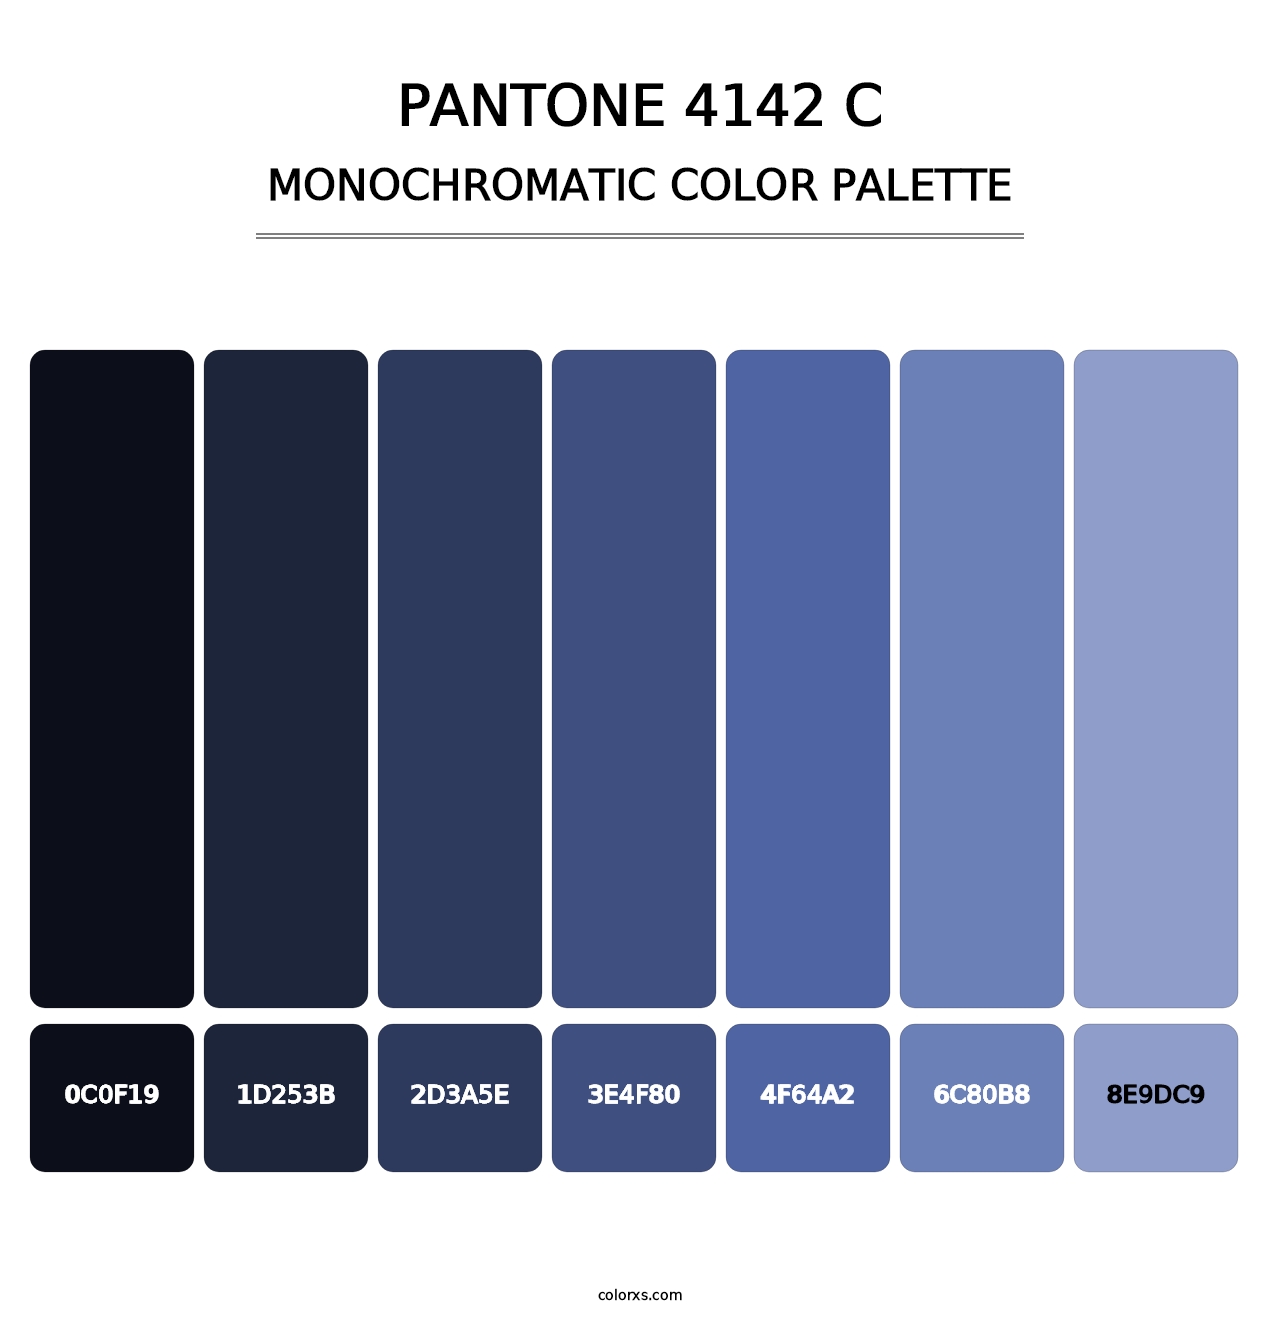 PANTONE 4142 C - Monochromatic Color Palette